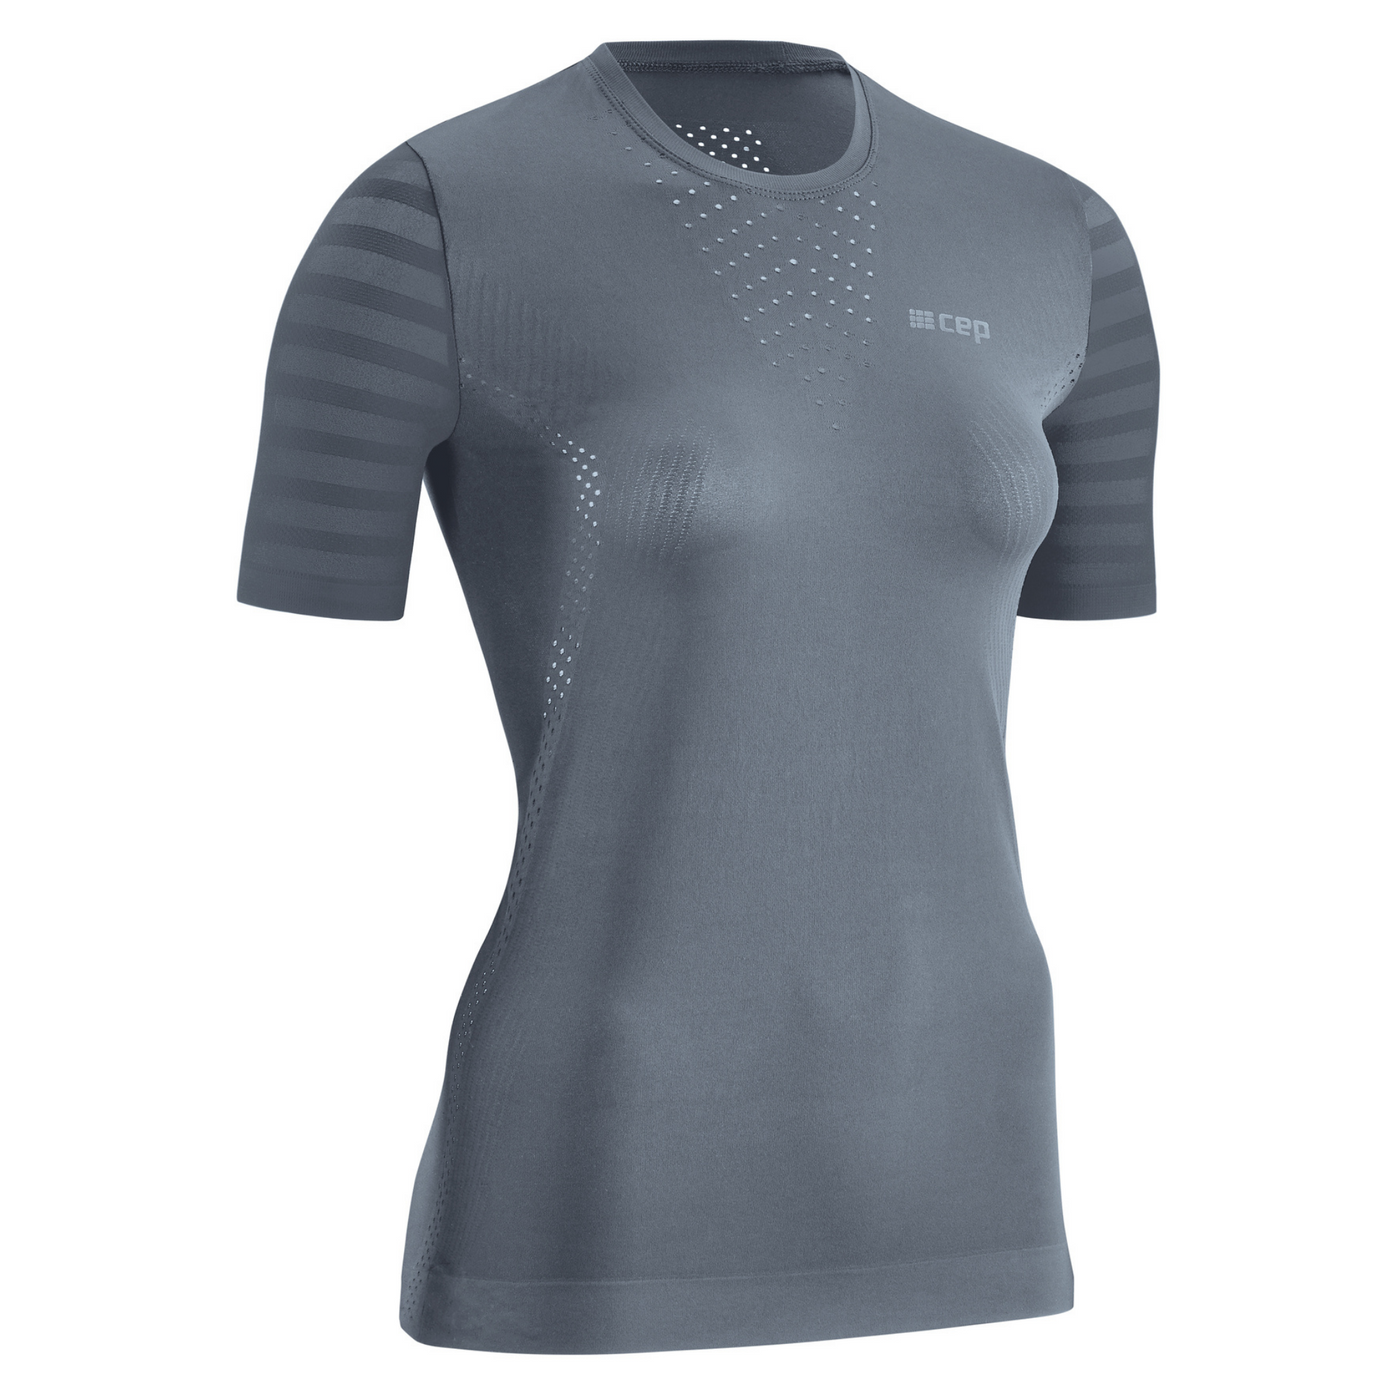 Ultralight Short Sleeve Shirt, Women, Grey, Front View